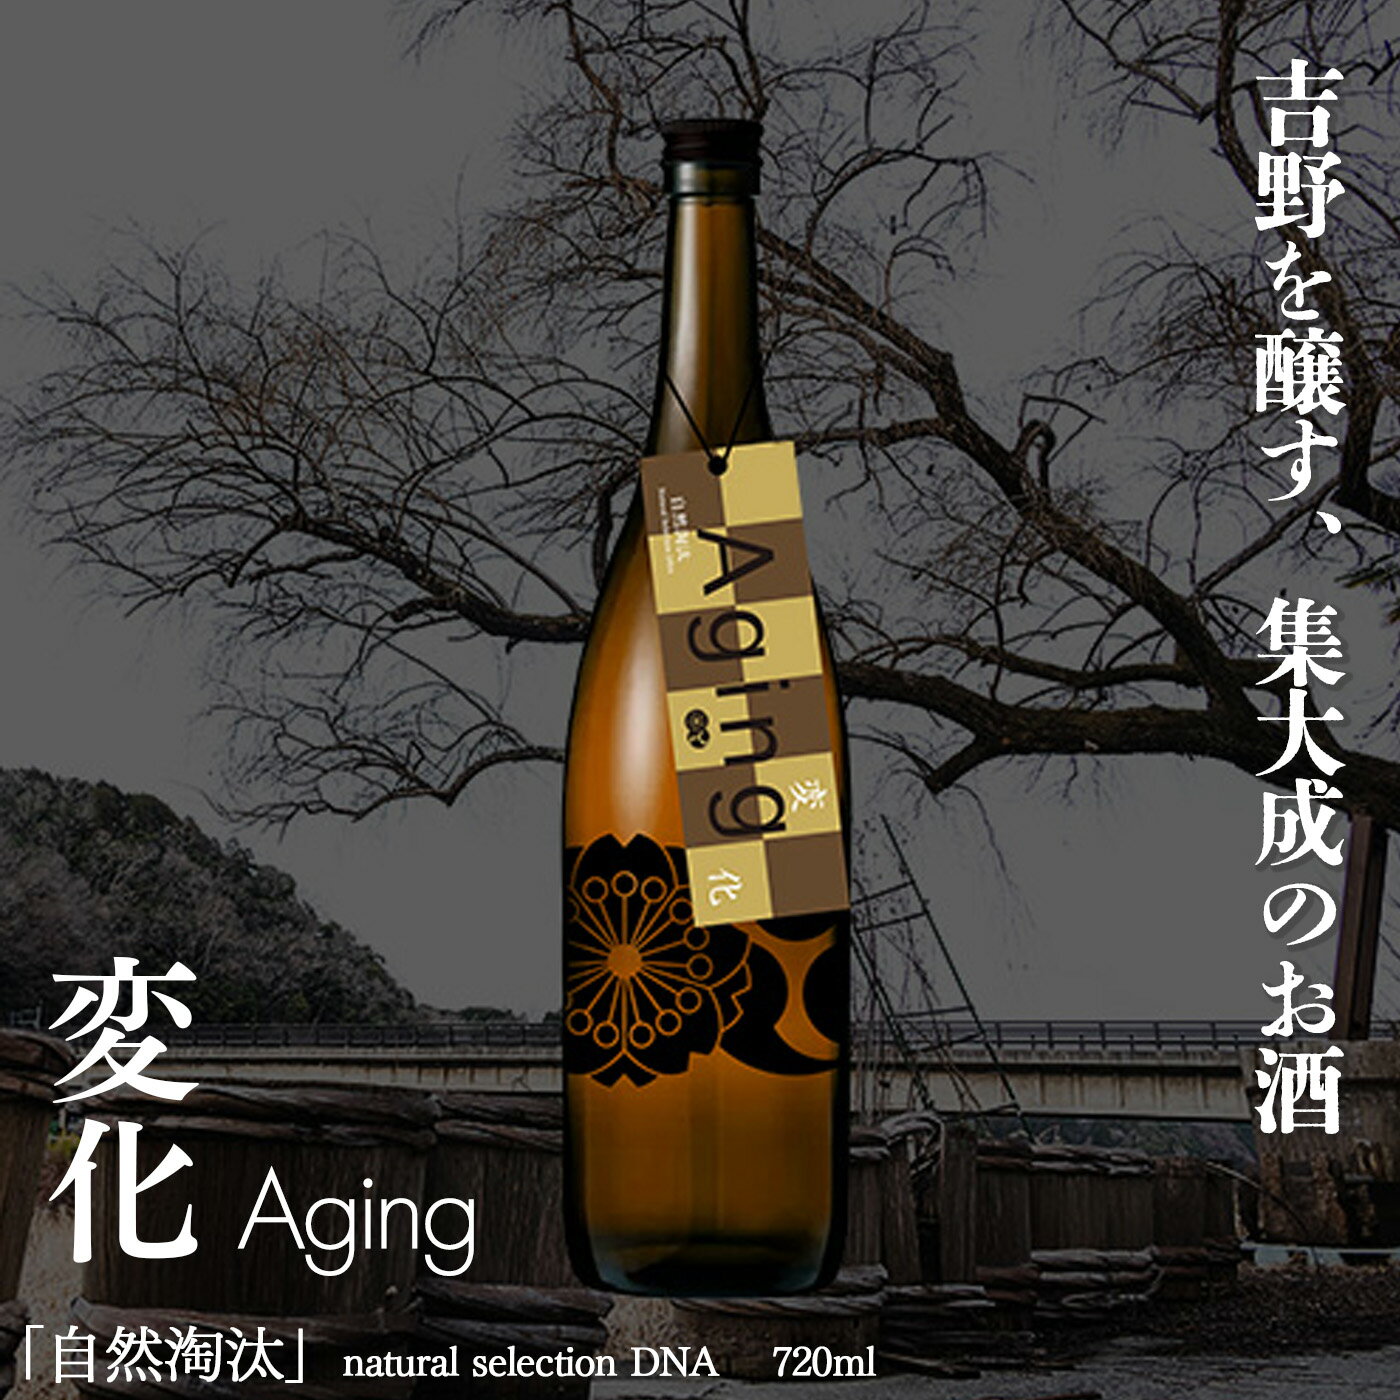 【ふるさと納税】自然淘汰 natural selection DNA Aging "変化” 日本酒 酒 美吉野酒造 奈良県 吉野町